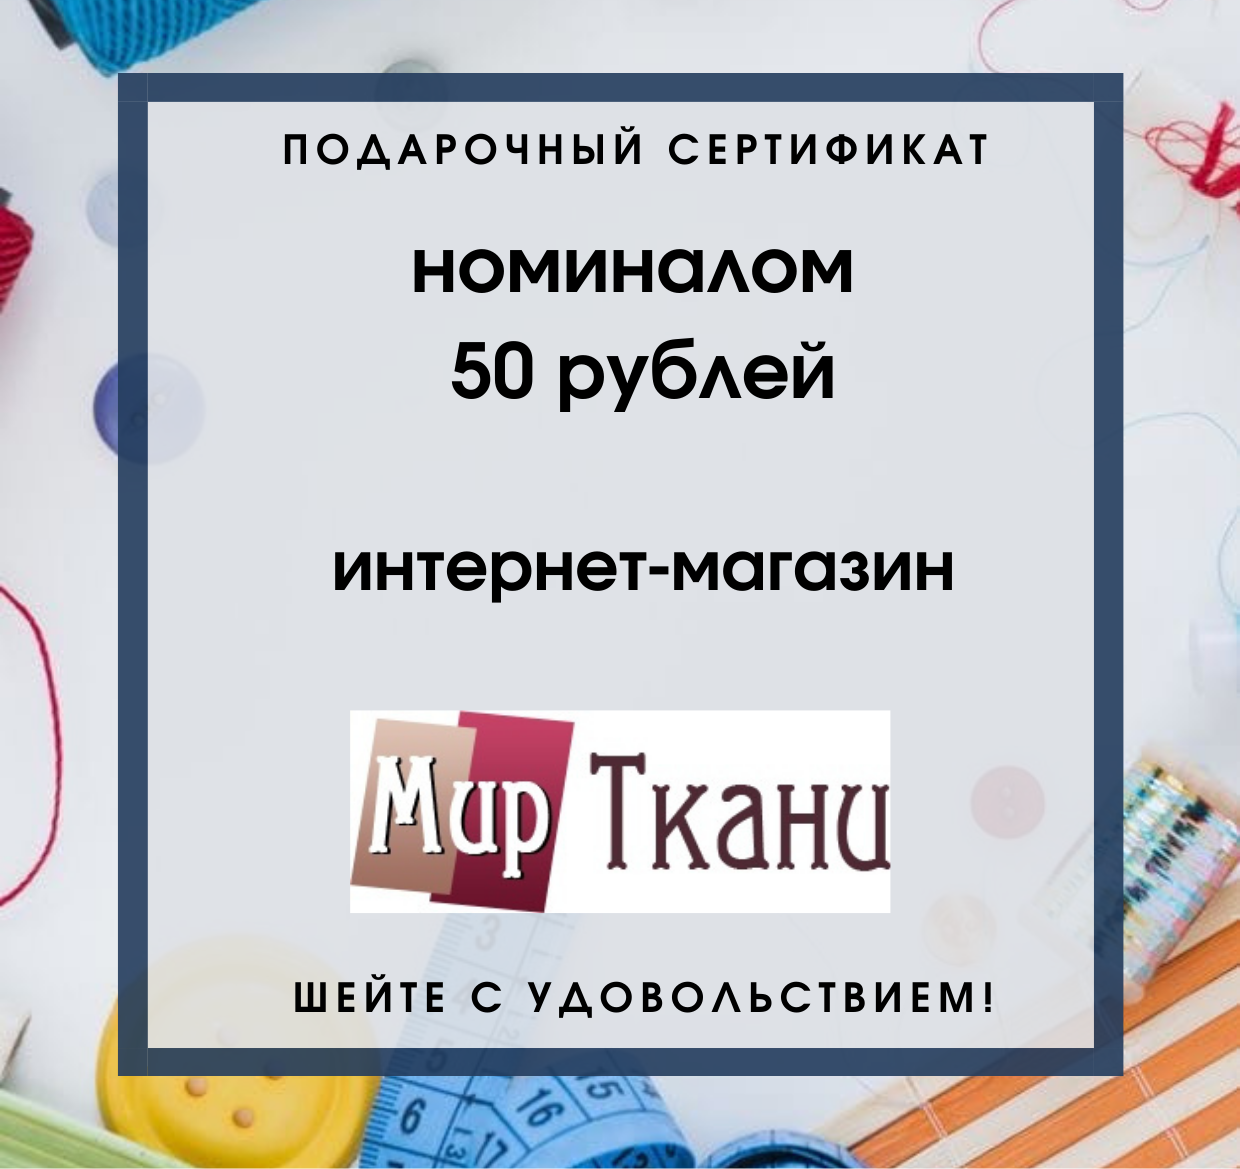 Подарочный сертификат номиналом 50 руб